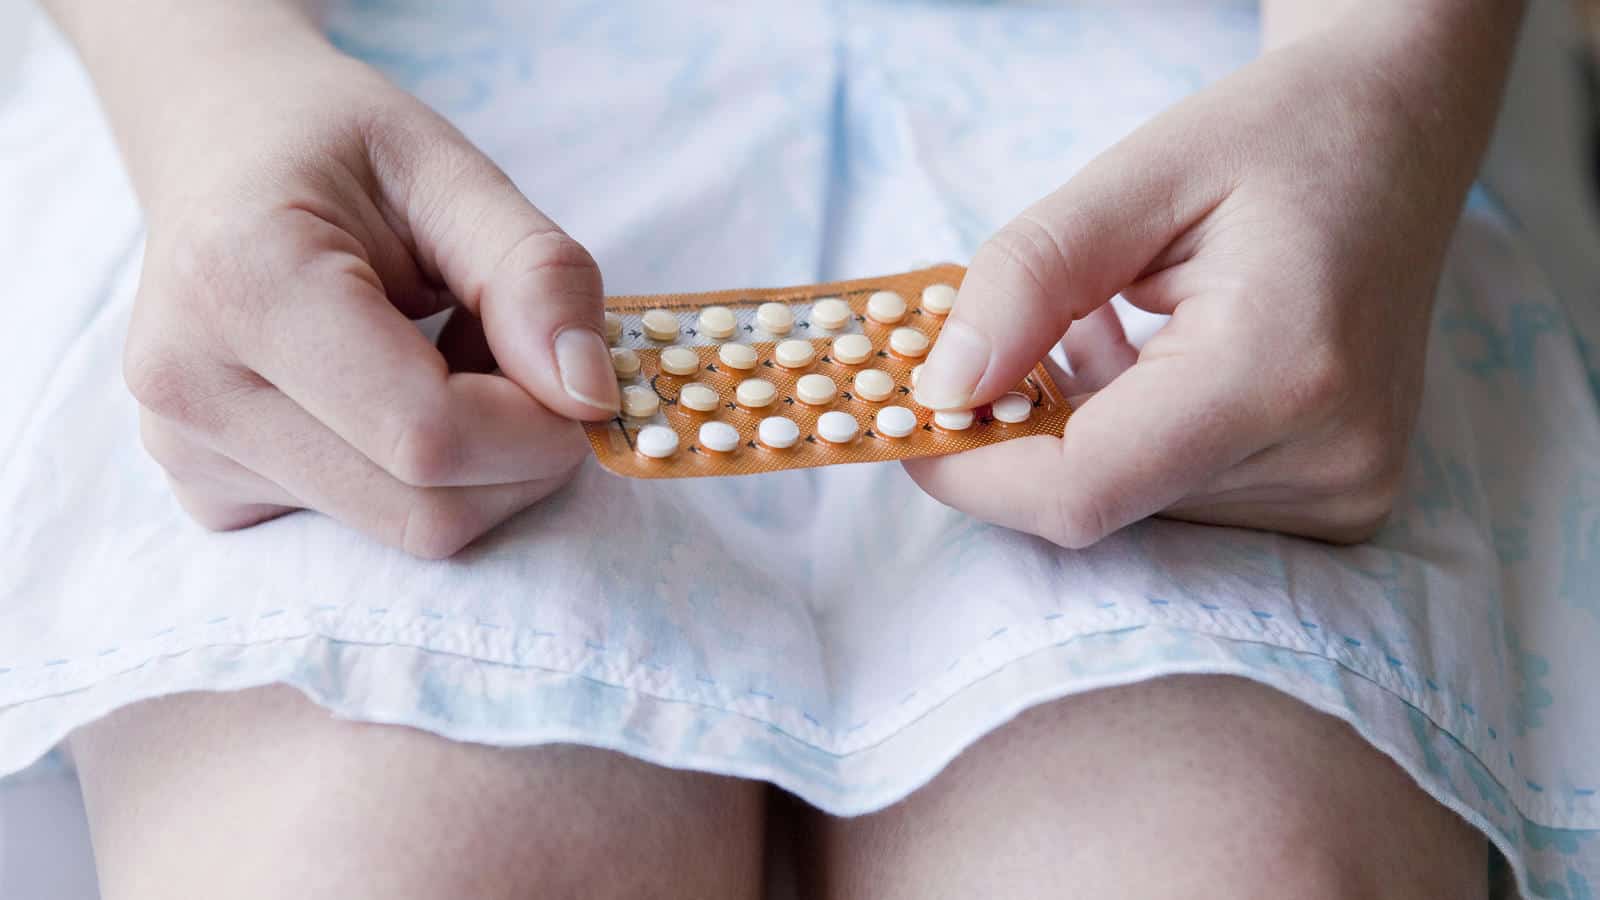 7 أشياء يمكن أن تحدث لجسمك إذا توقفت عن تناول حبوب منع الحمل